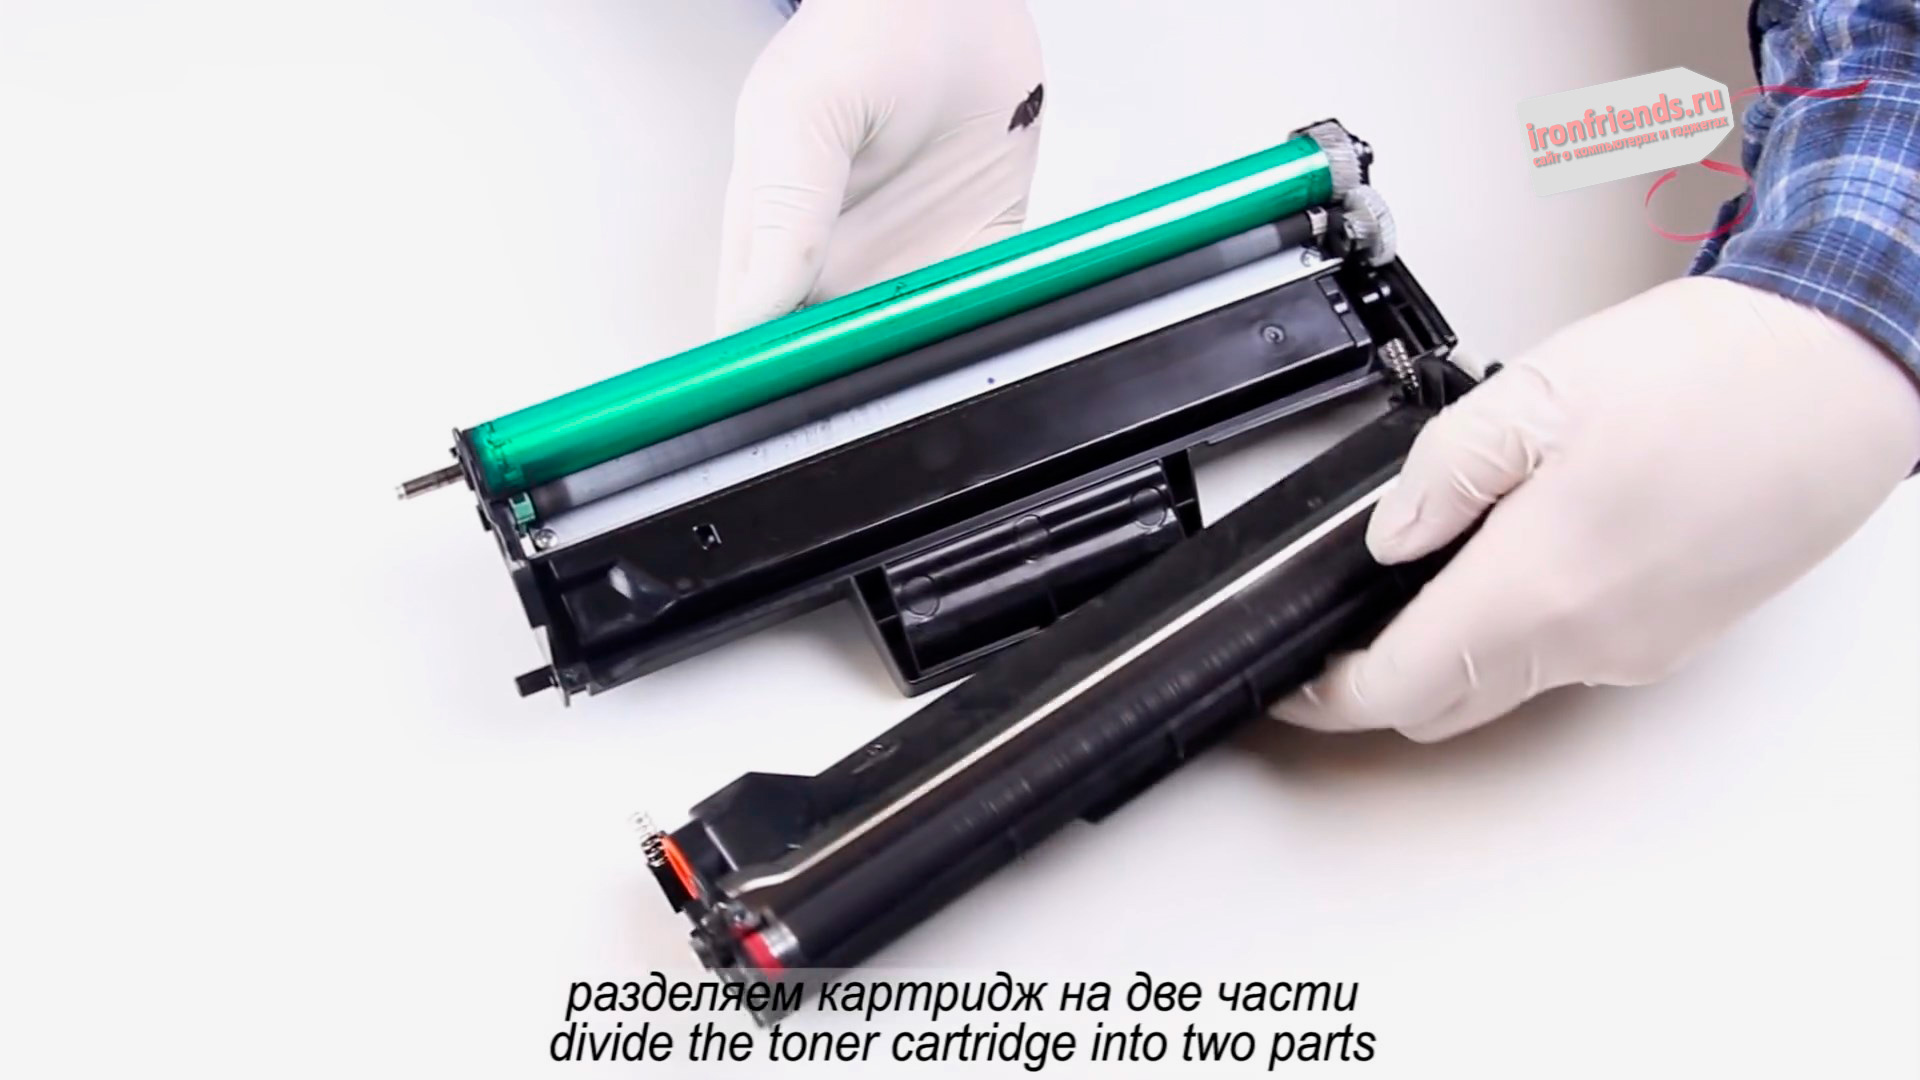 Разборка картриджа лазерного принтера